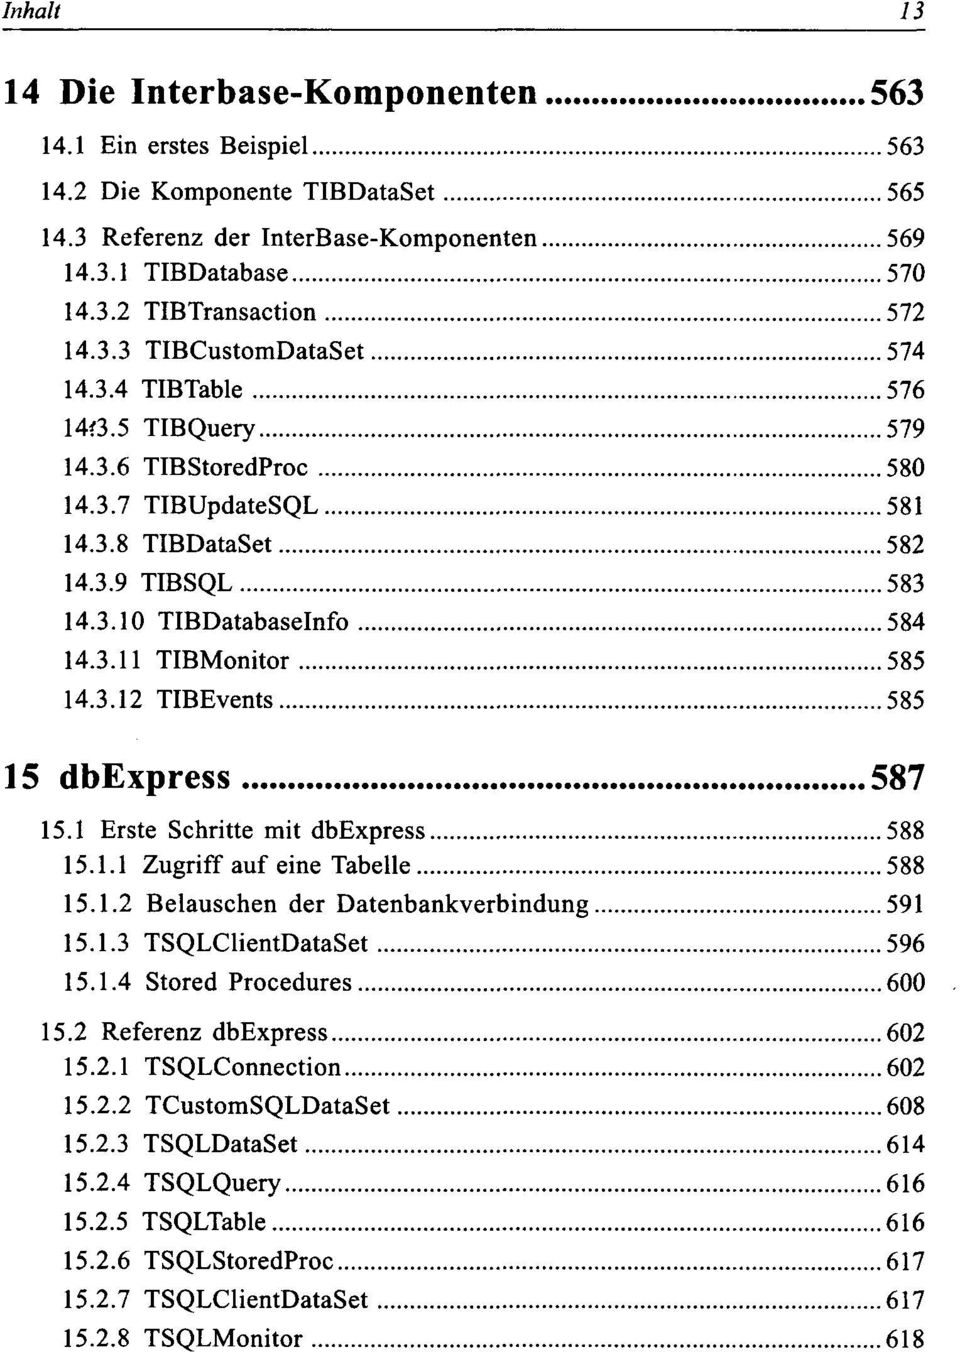 3.12 TIBEvents 585 15 dbexpress 587 15.1 Erste Schritte mit dbexpress 588 15.1.1 Zugriff auf eine Tabelle 588 15.1.2 Belauschen der Datenbankverbindung 591 15.1.3 TSQLClientDataSet 596 15.1.4 Stored Procedures 600 15.